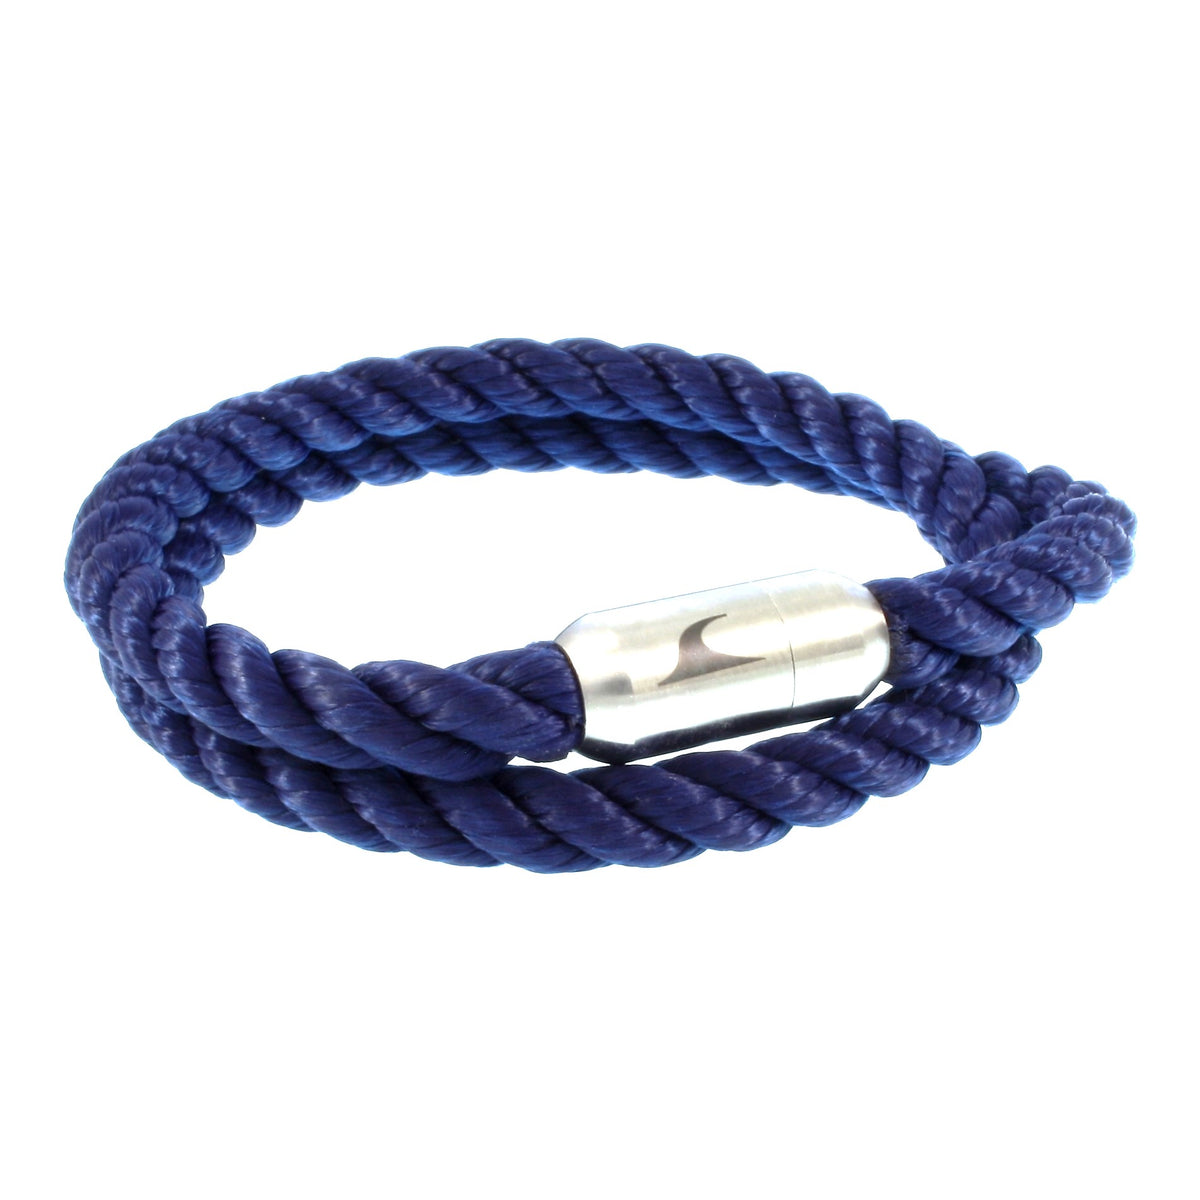 Herren-Segeltau-Armband-hawaii-blau-Edelstahlverschluss-vorn-wavepirate-shop-k